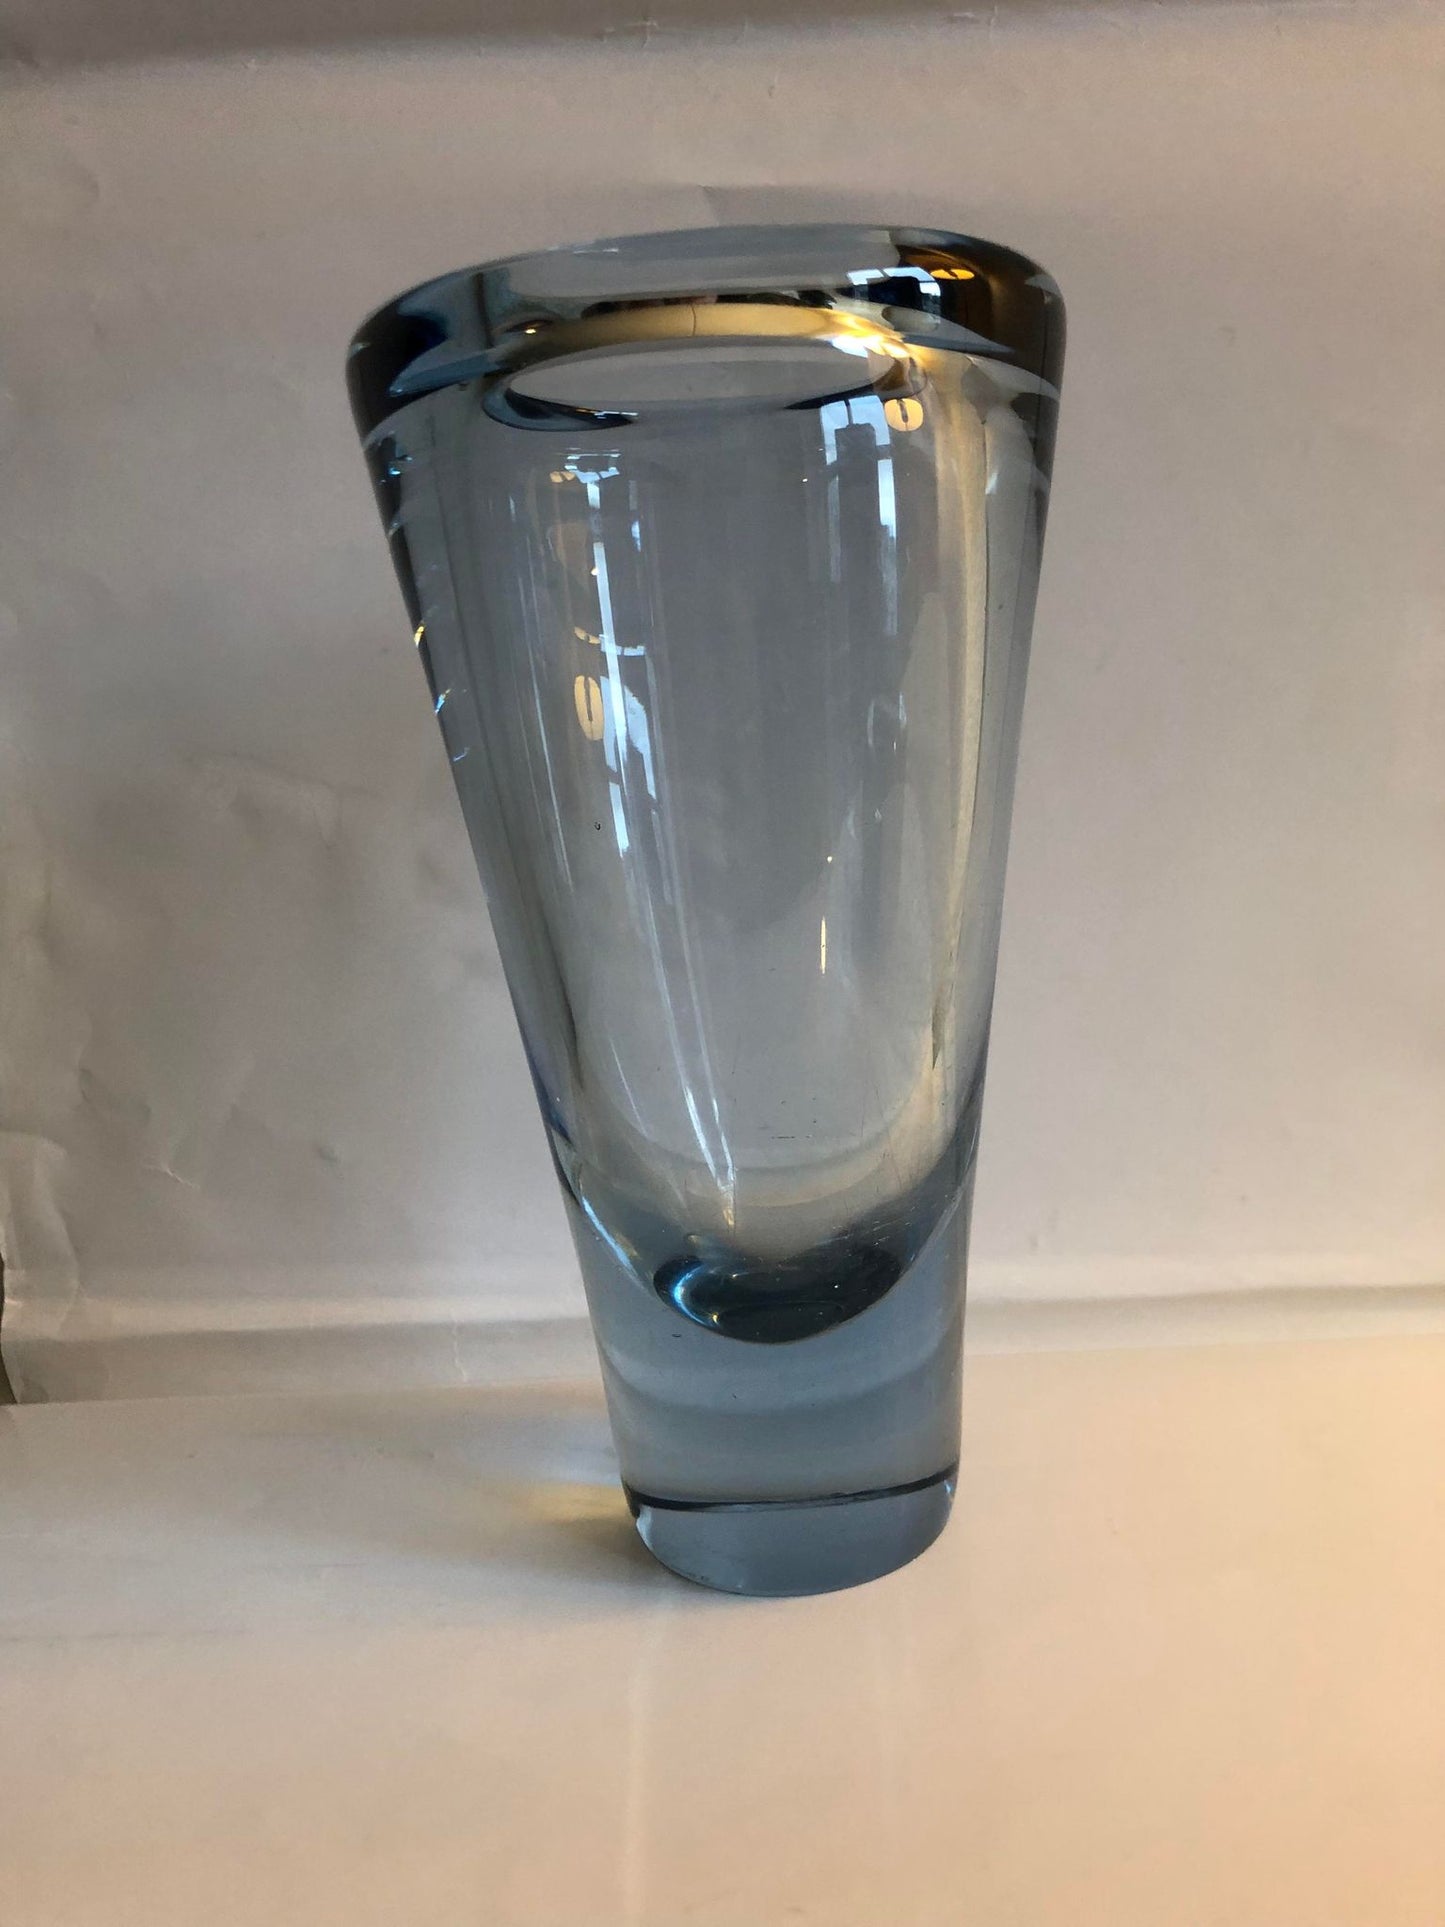 Retro glass vase, Umanak design by Per Lütken for Holmegaard - no. 0520